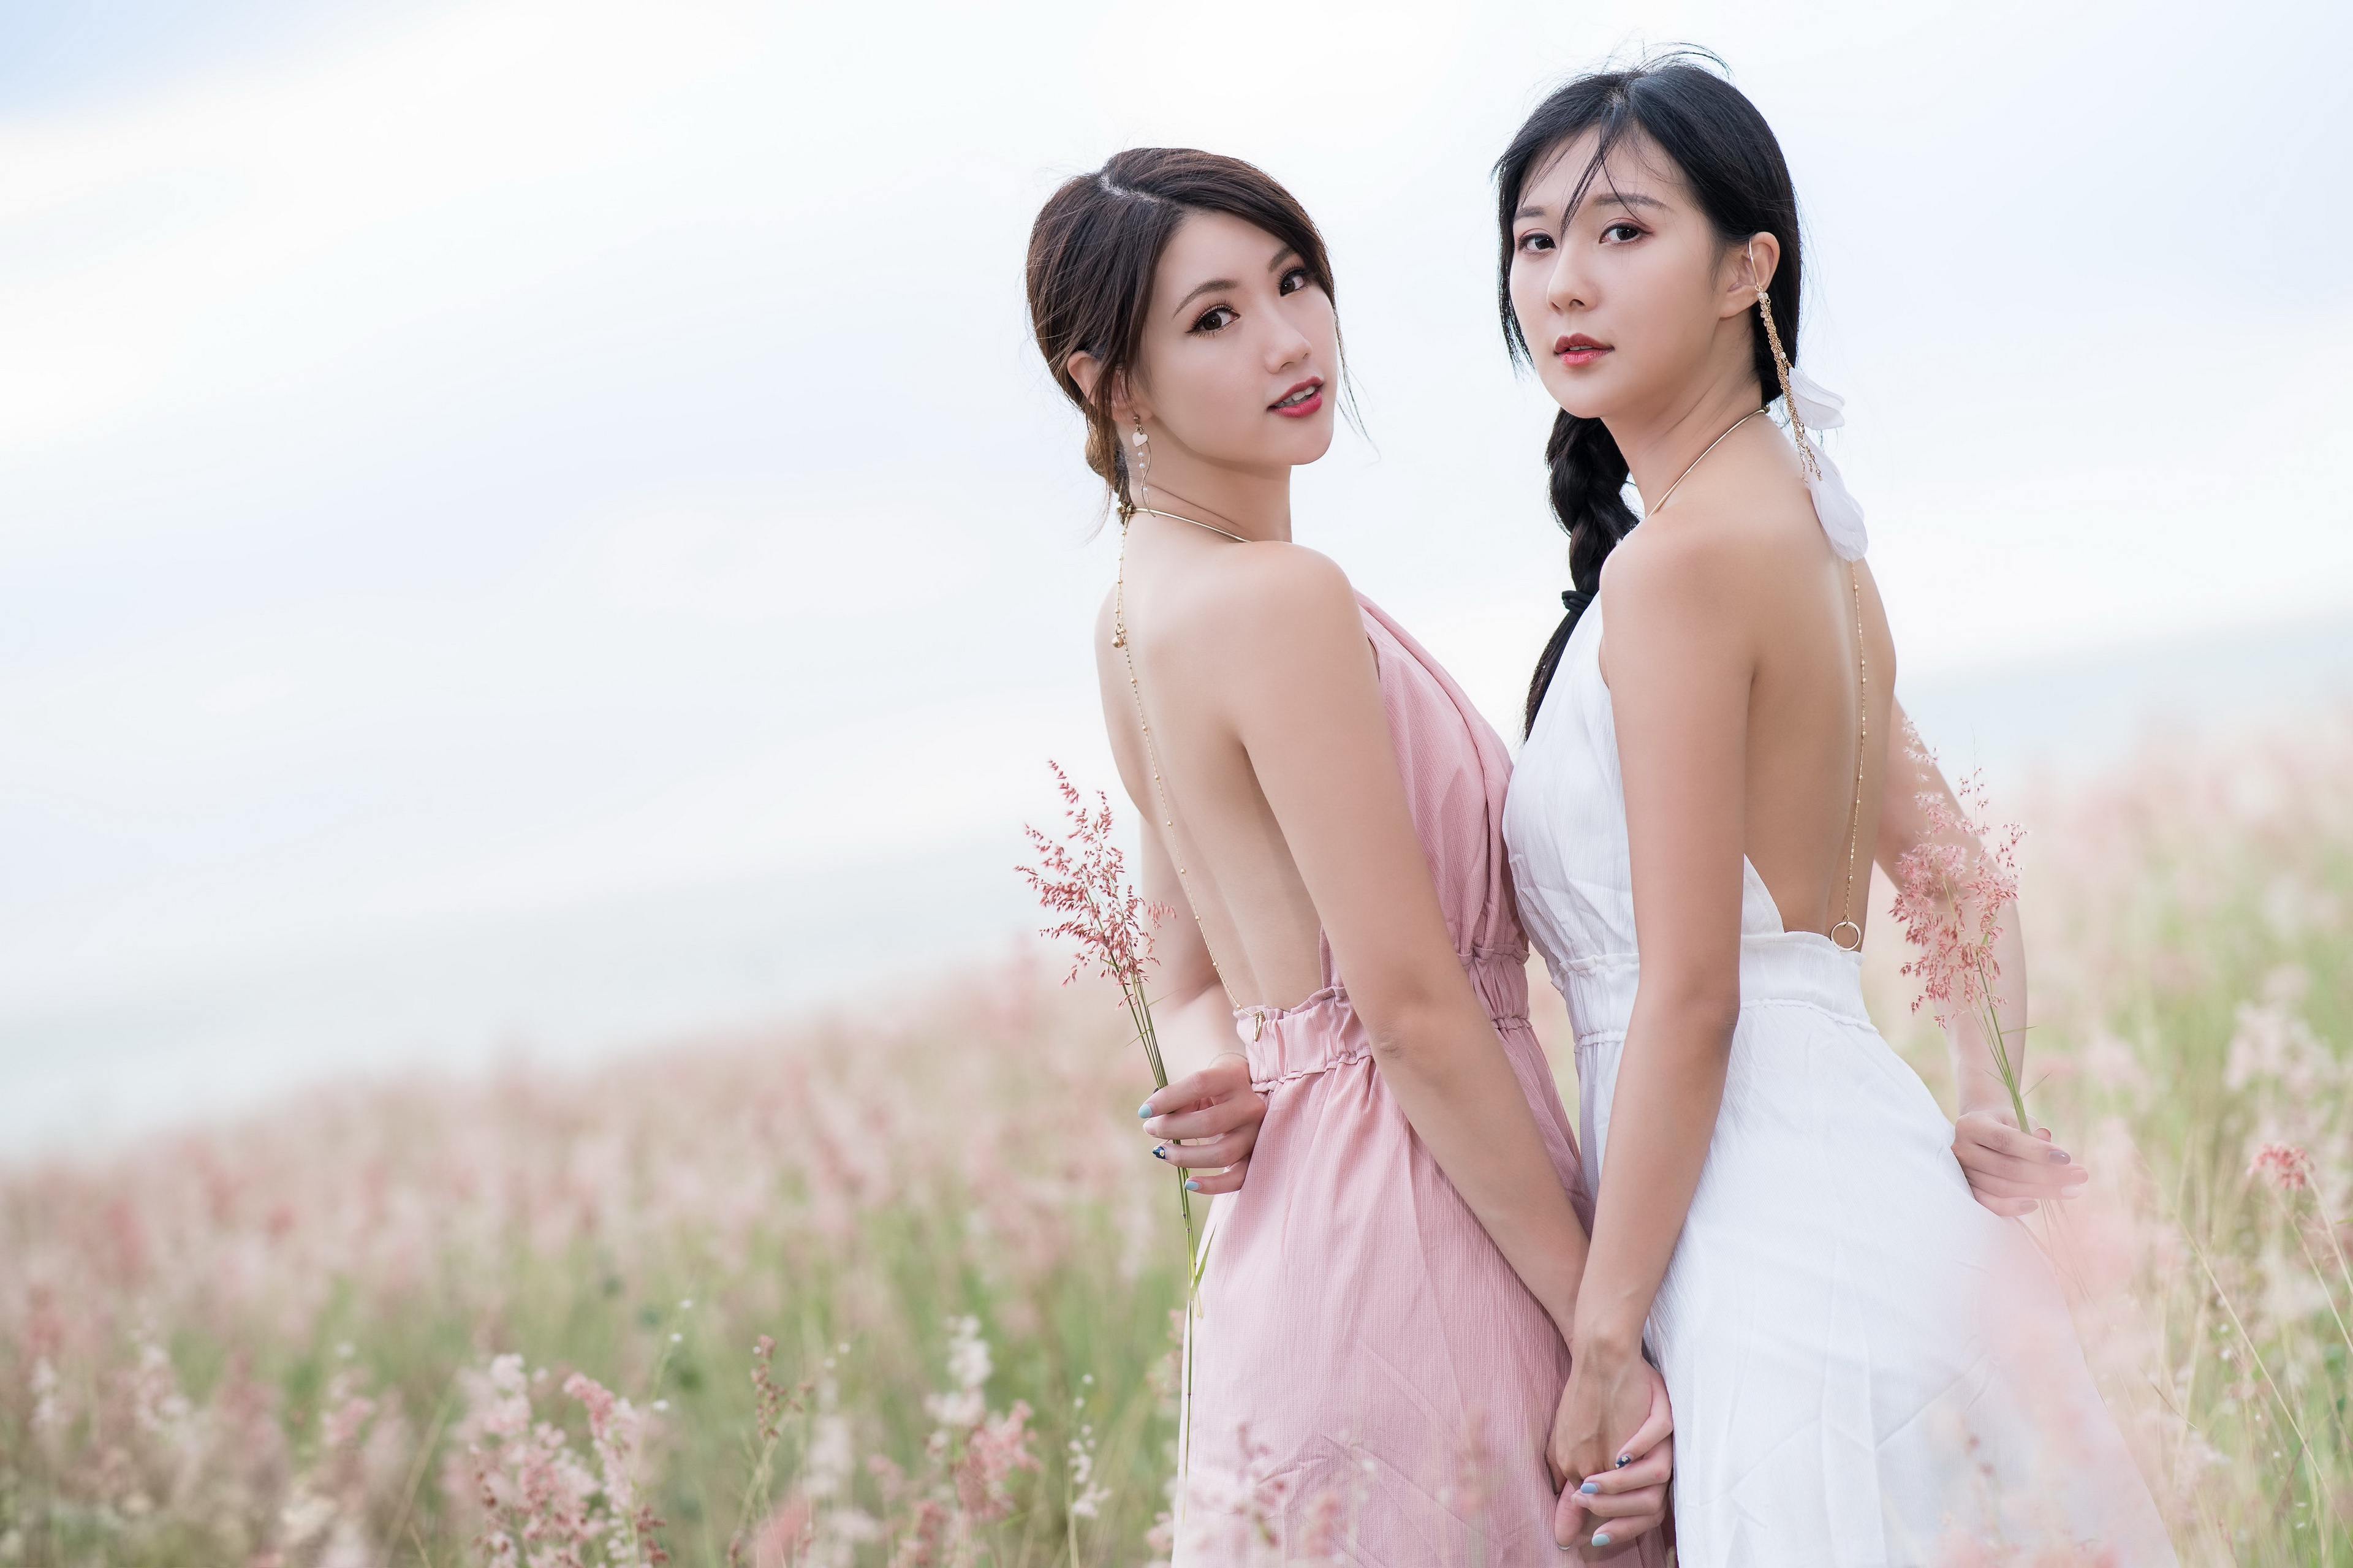 Asian Model Women Long Hair Brunette Pink Dress White Dress Flowers Field Braided Hair Ponytail Hold 3840x2559